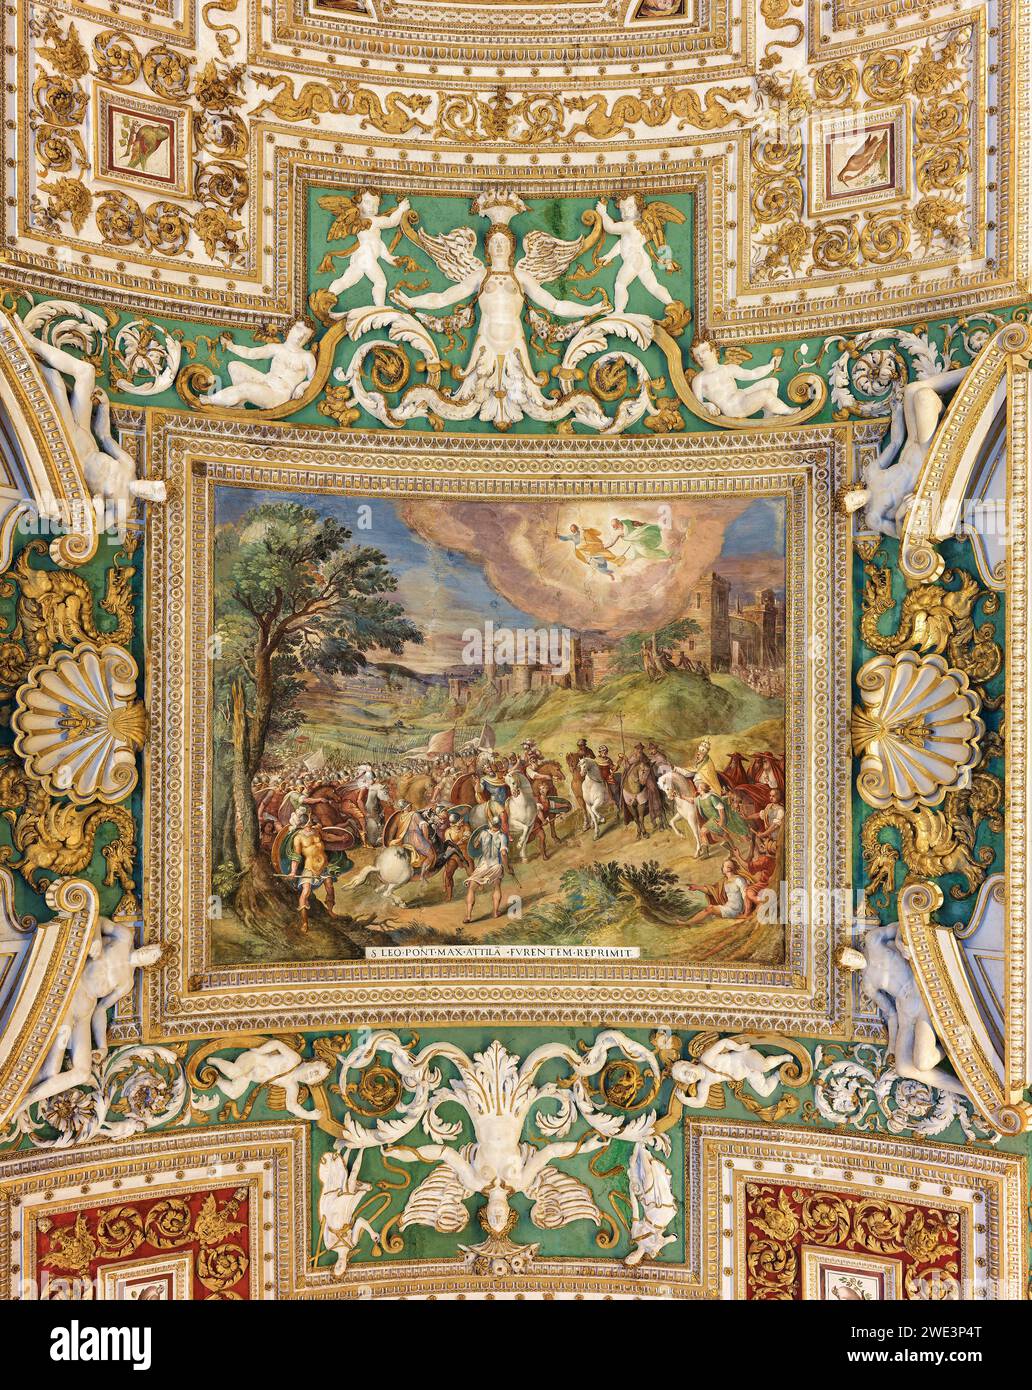 Gemälde (Papst St. Leo konfrontiert Attila den Hunnen) und Dekorationen an der Decke in der Galerie der geographischen Karten, Vatikanmuseum, Rom, Italien. Stockfoto